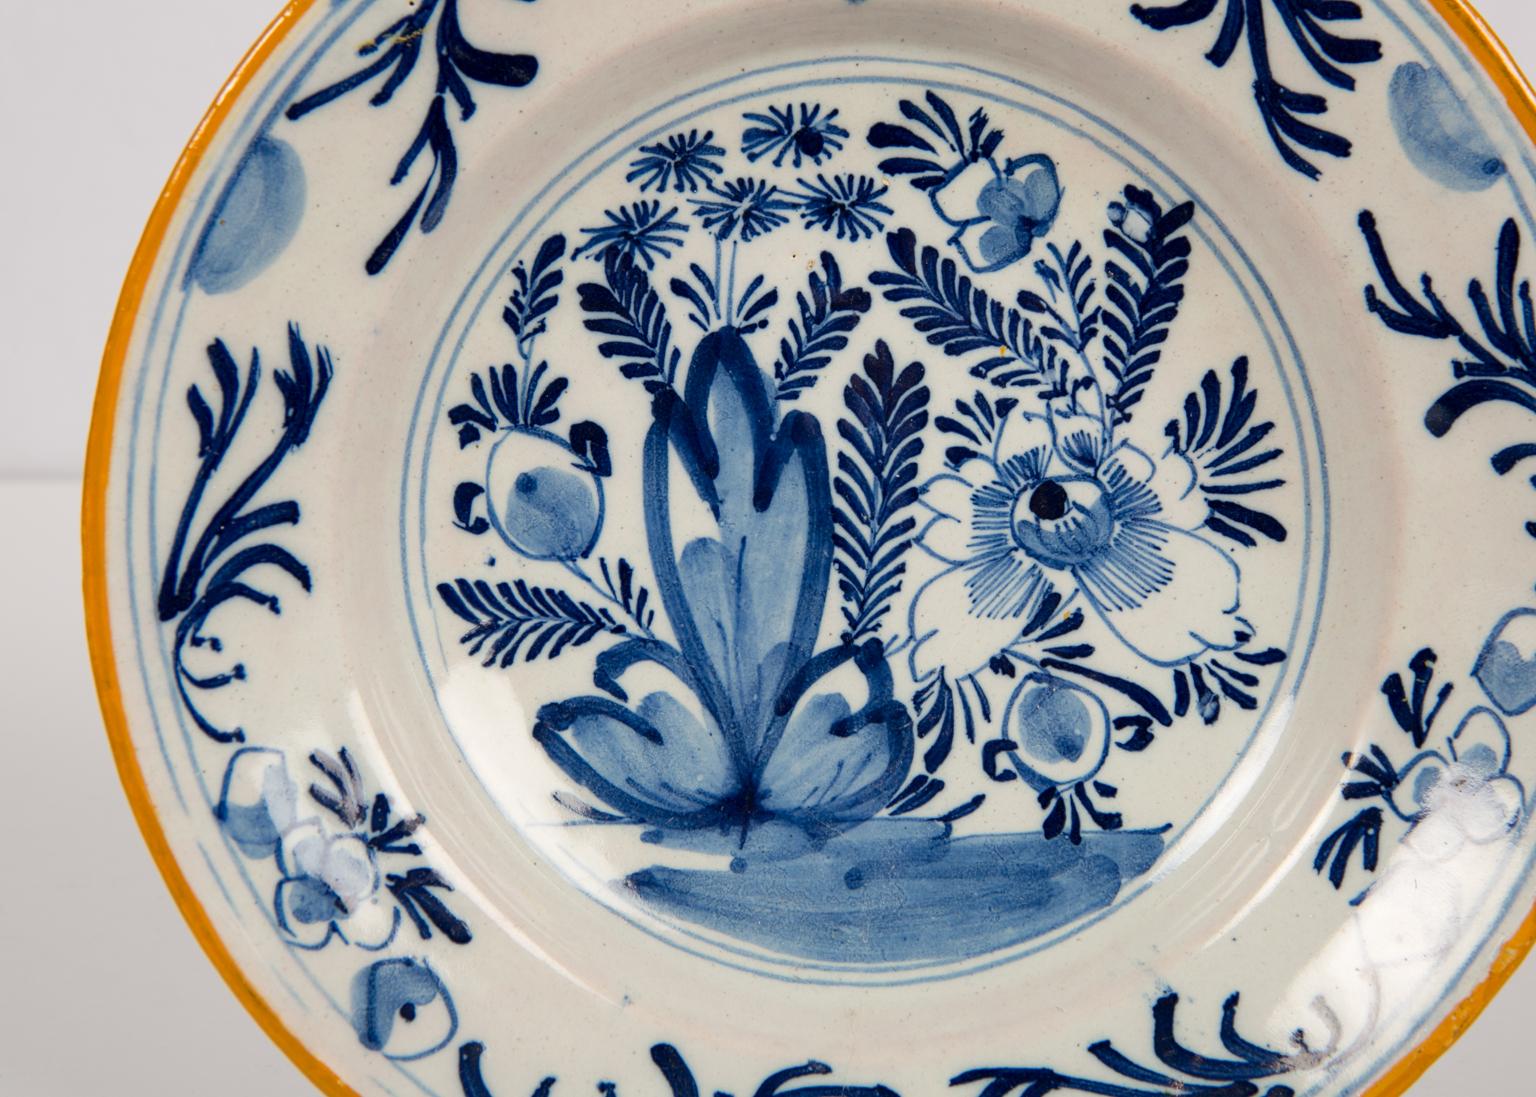 Nous avons le plaisir d'offrir ce groupe de trois plats Delft peints en bleu et blanc avec des bords peints en jaune moutarde.
Chaque plat représente une scène de jardin fleuri. Nous voyons une grande pivoine et d'autres fleurs.
La bordure est